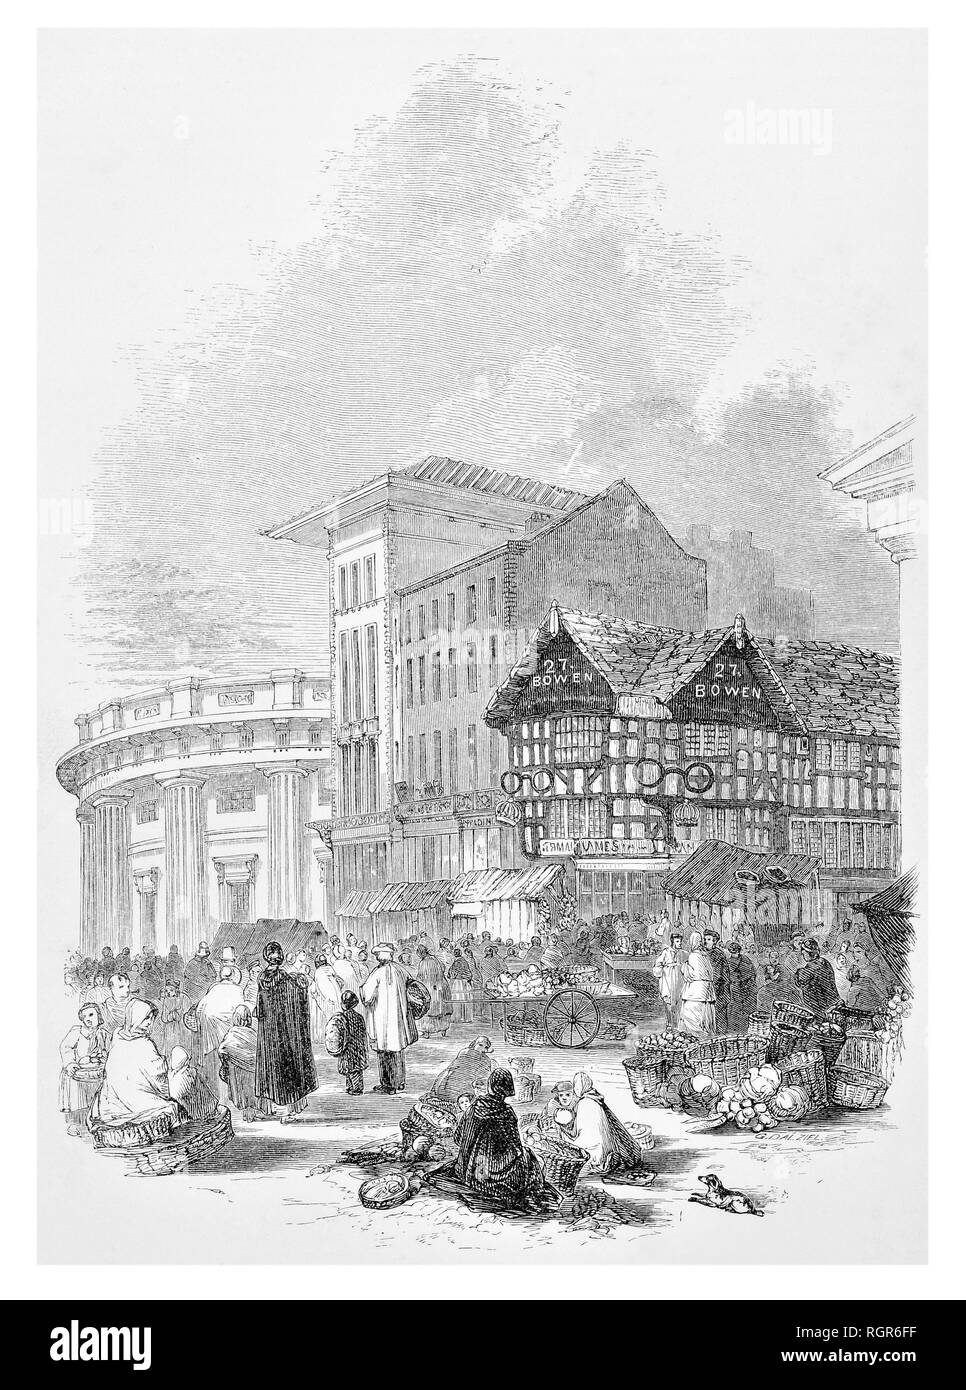 Marché, maisons anciennes et partie de l'échange de Manchester Banque D'Images